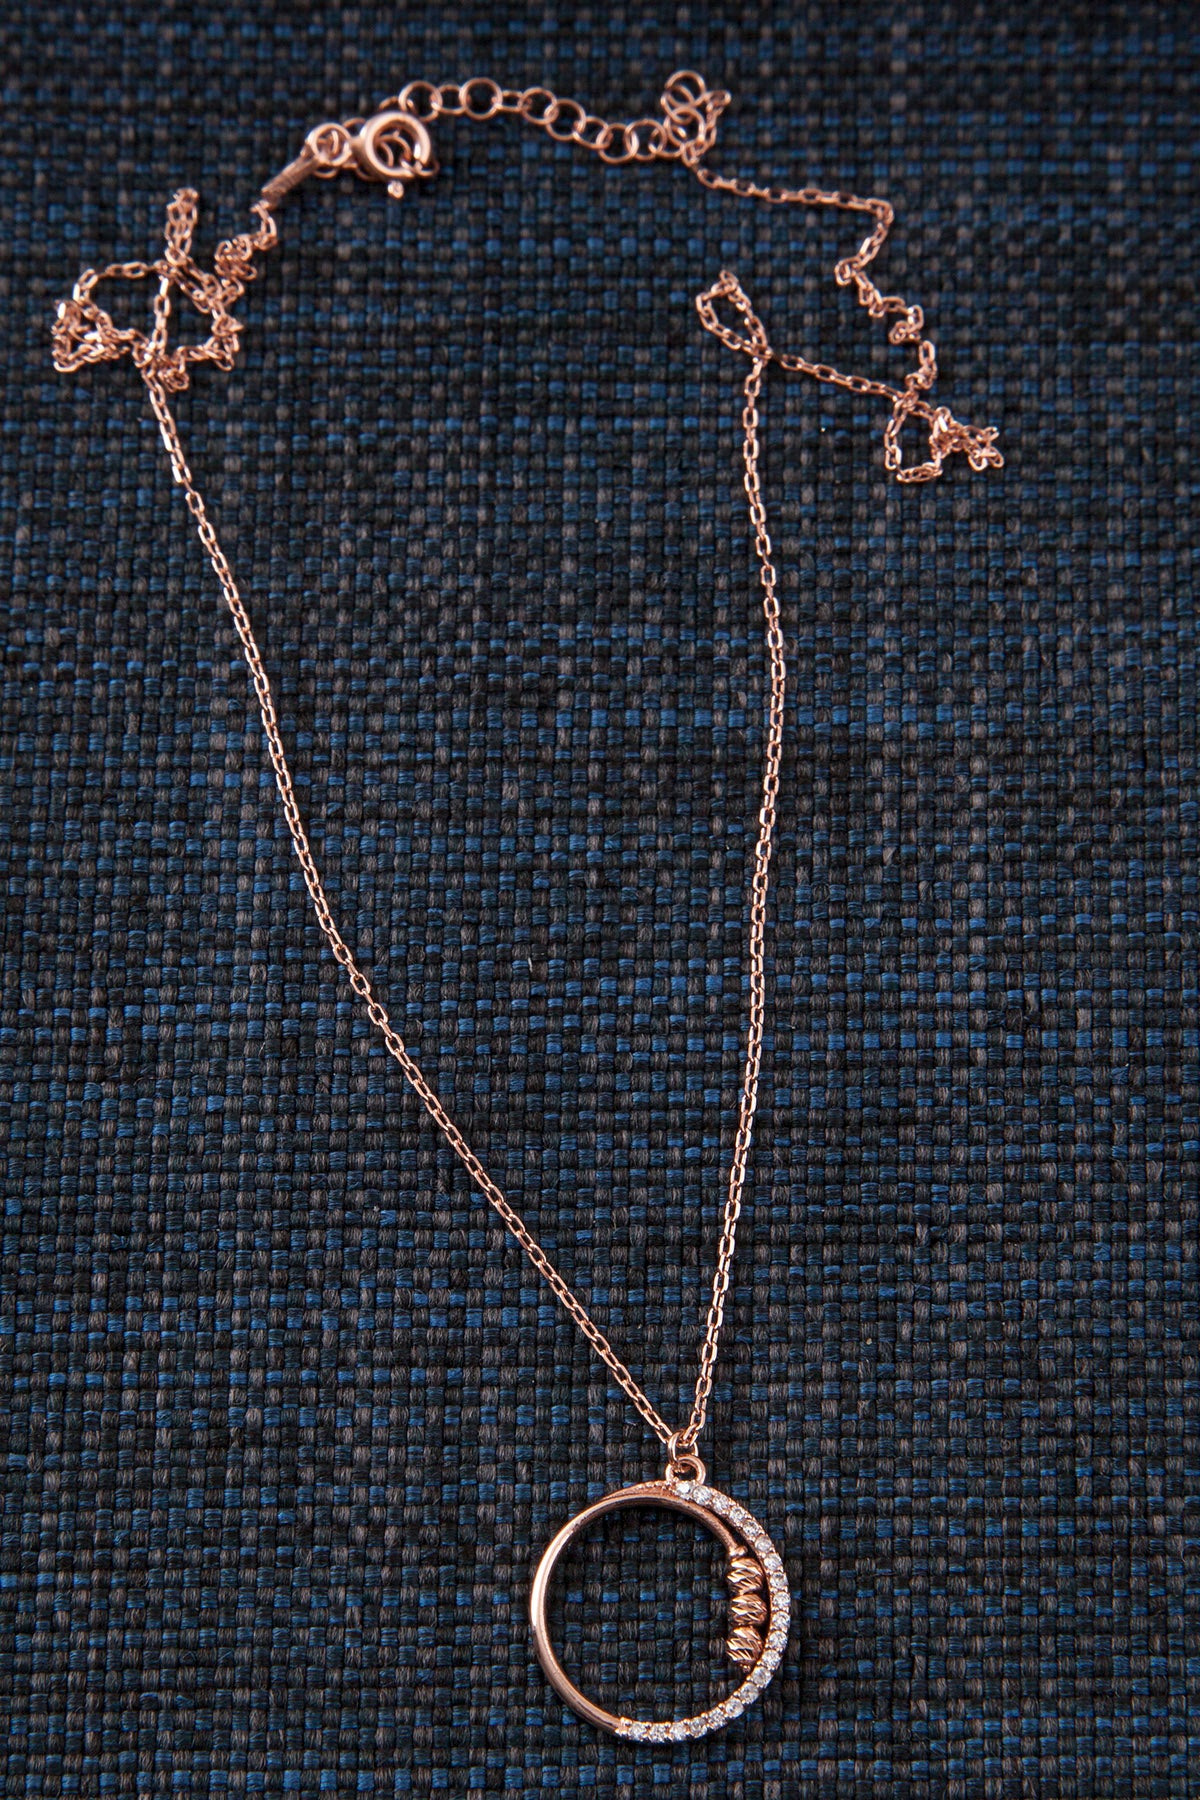 Silber Halskette mit Kreis-Anhänger in Gelbgold  & Roségold mit Zirkonium